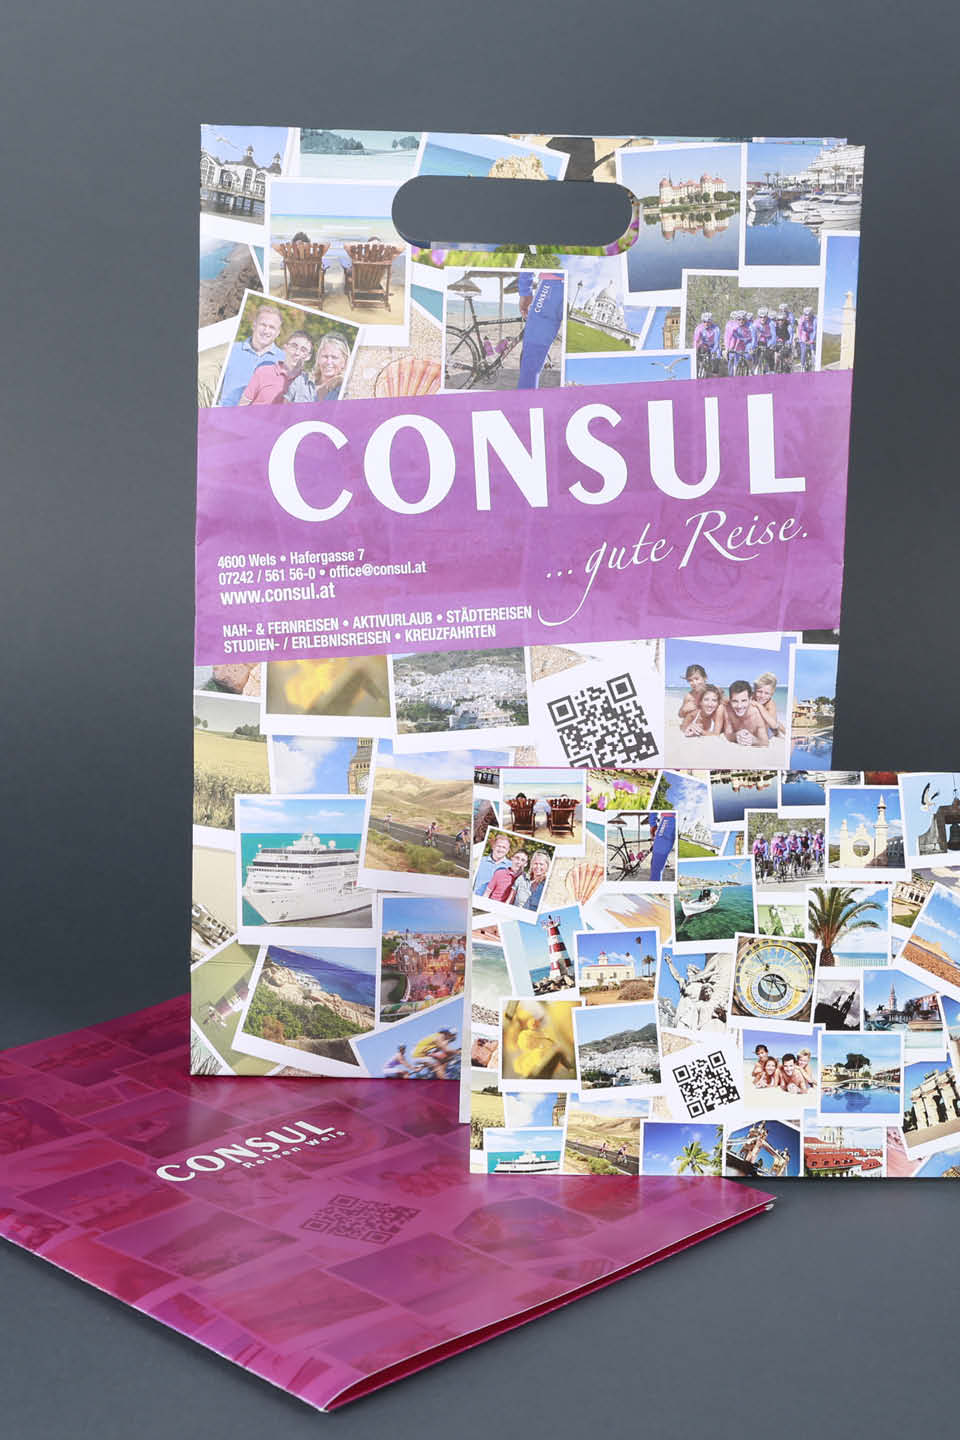 Consul Reisen Wels Gestaltung Werbemittel Tragtasche